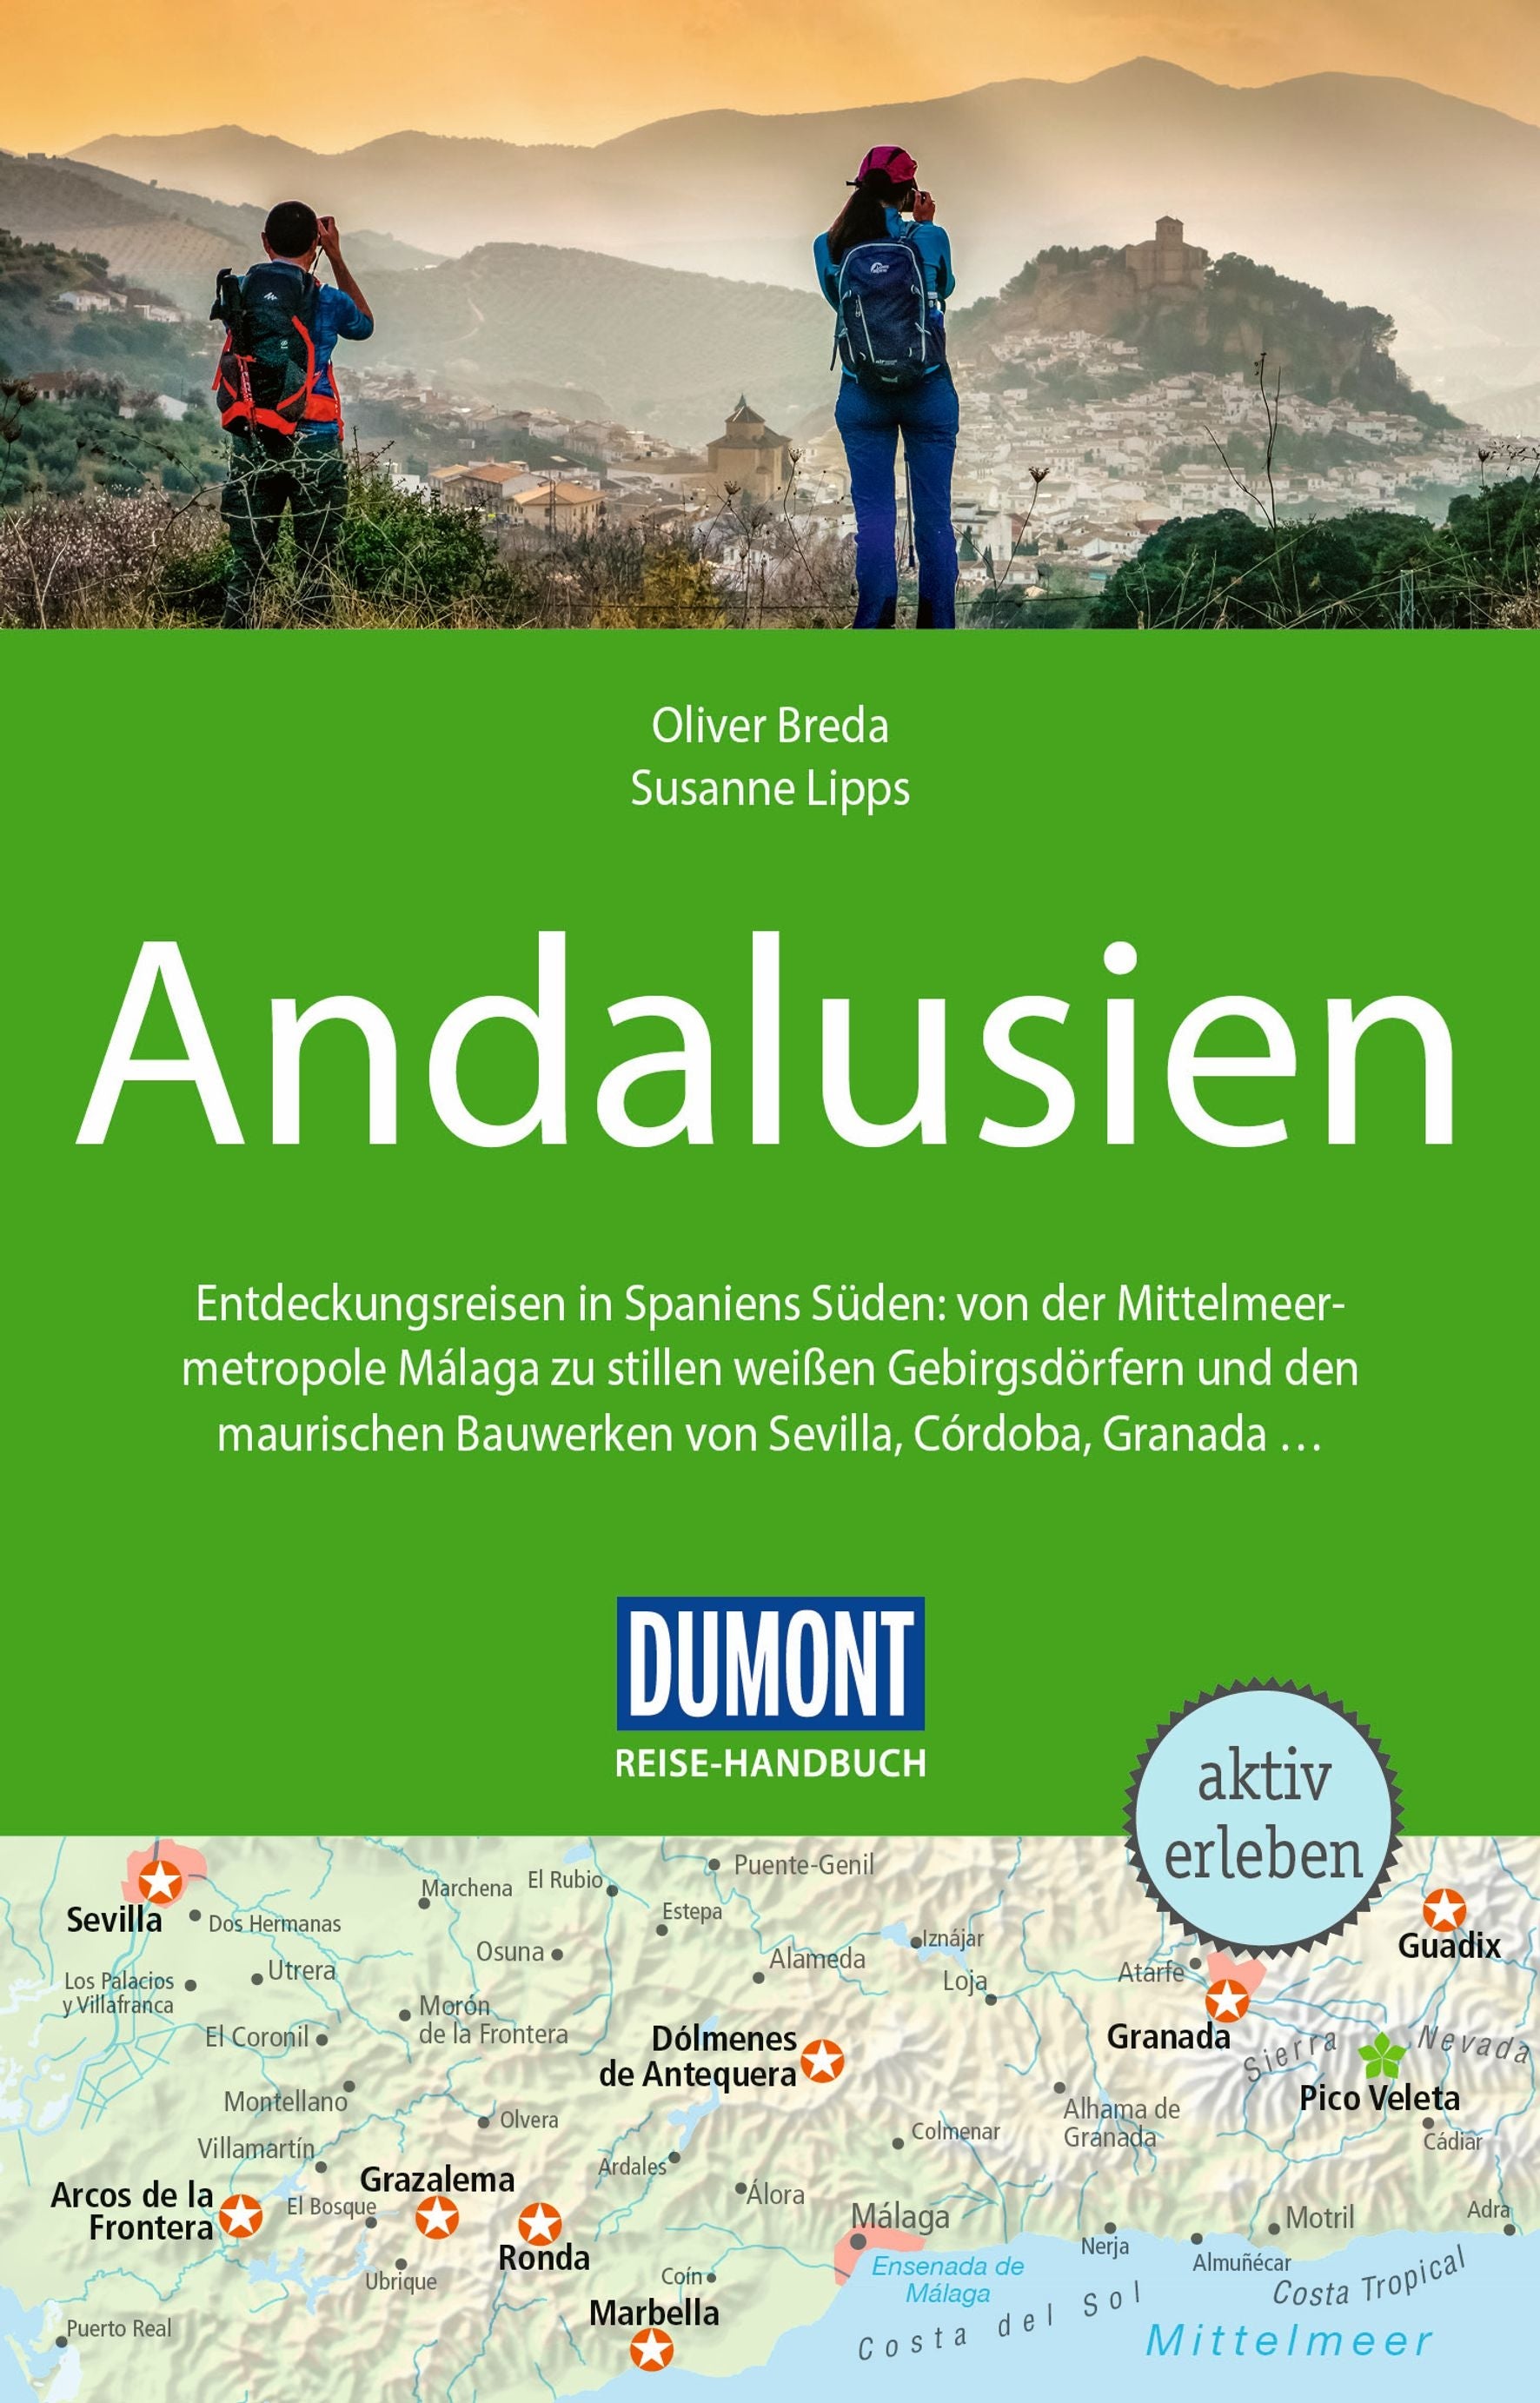 Andalusien - DuMont Reisehandbuch - Reiseführer